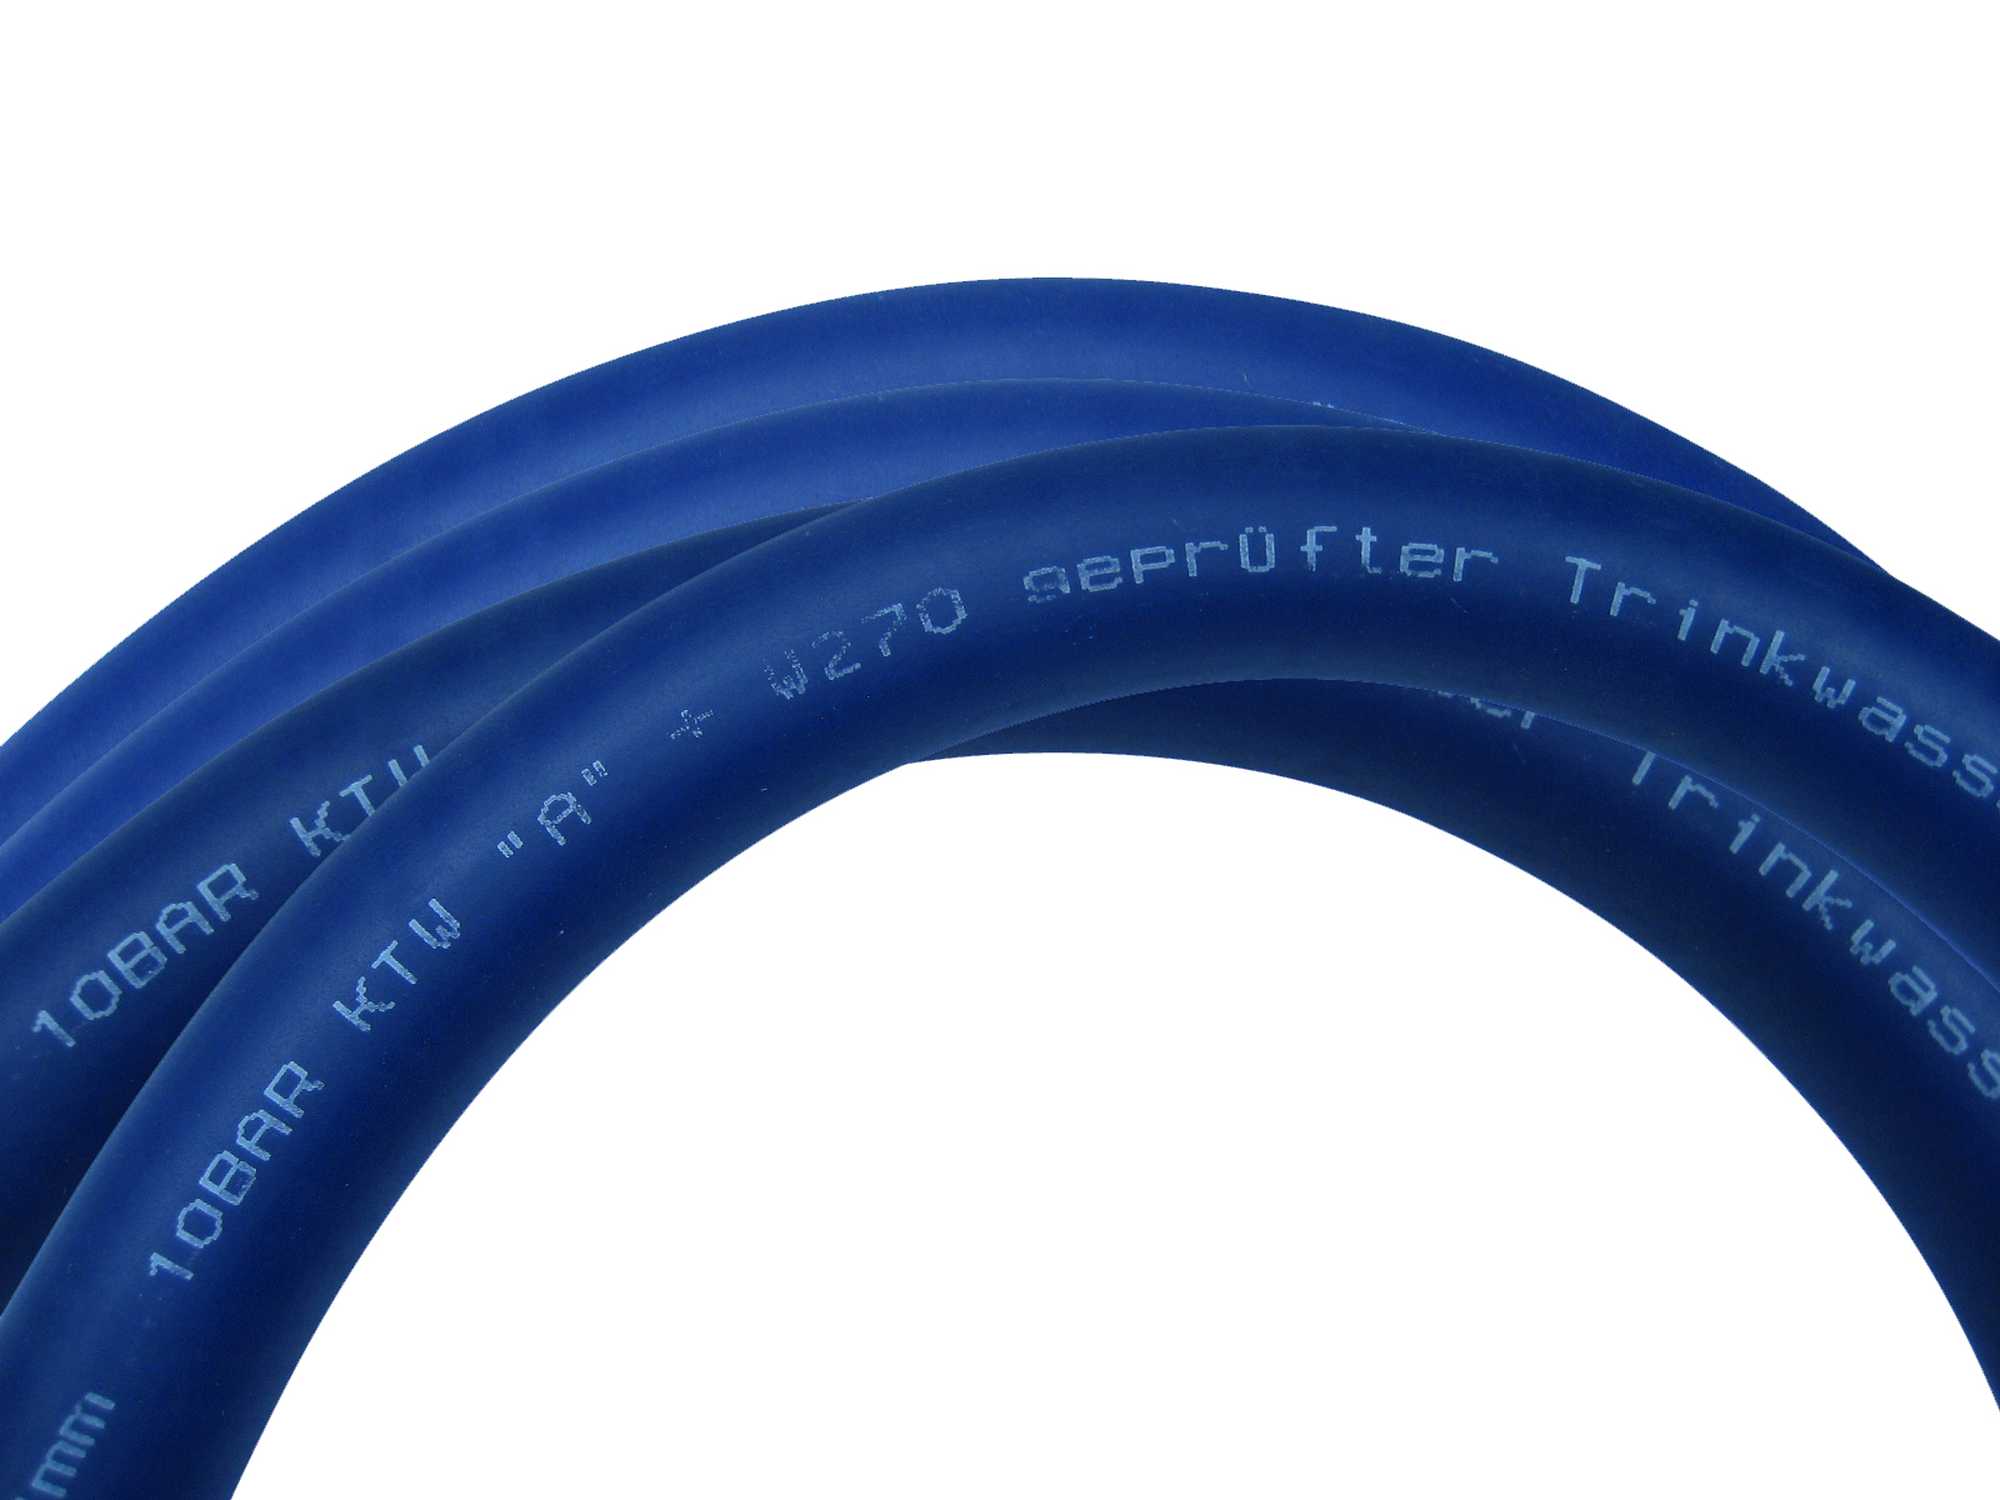 Extra-flexibler Profiline-Aqua Extra Soft 19mm (3/4") als Meterware, 5m - 50m Länge, Trinkwasserschlauch nach KTW-A, W270 